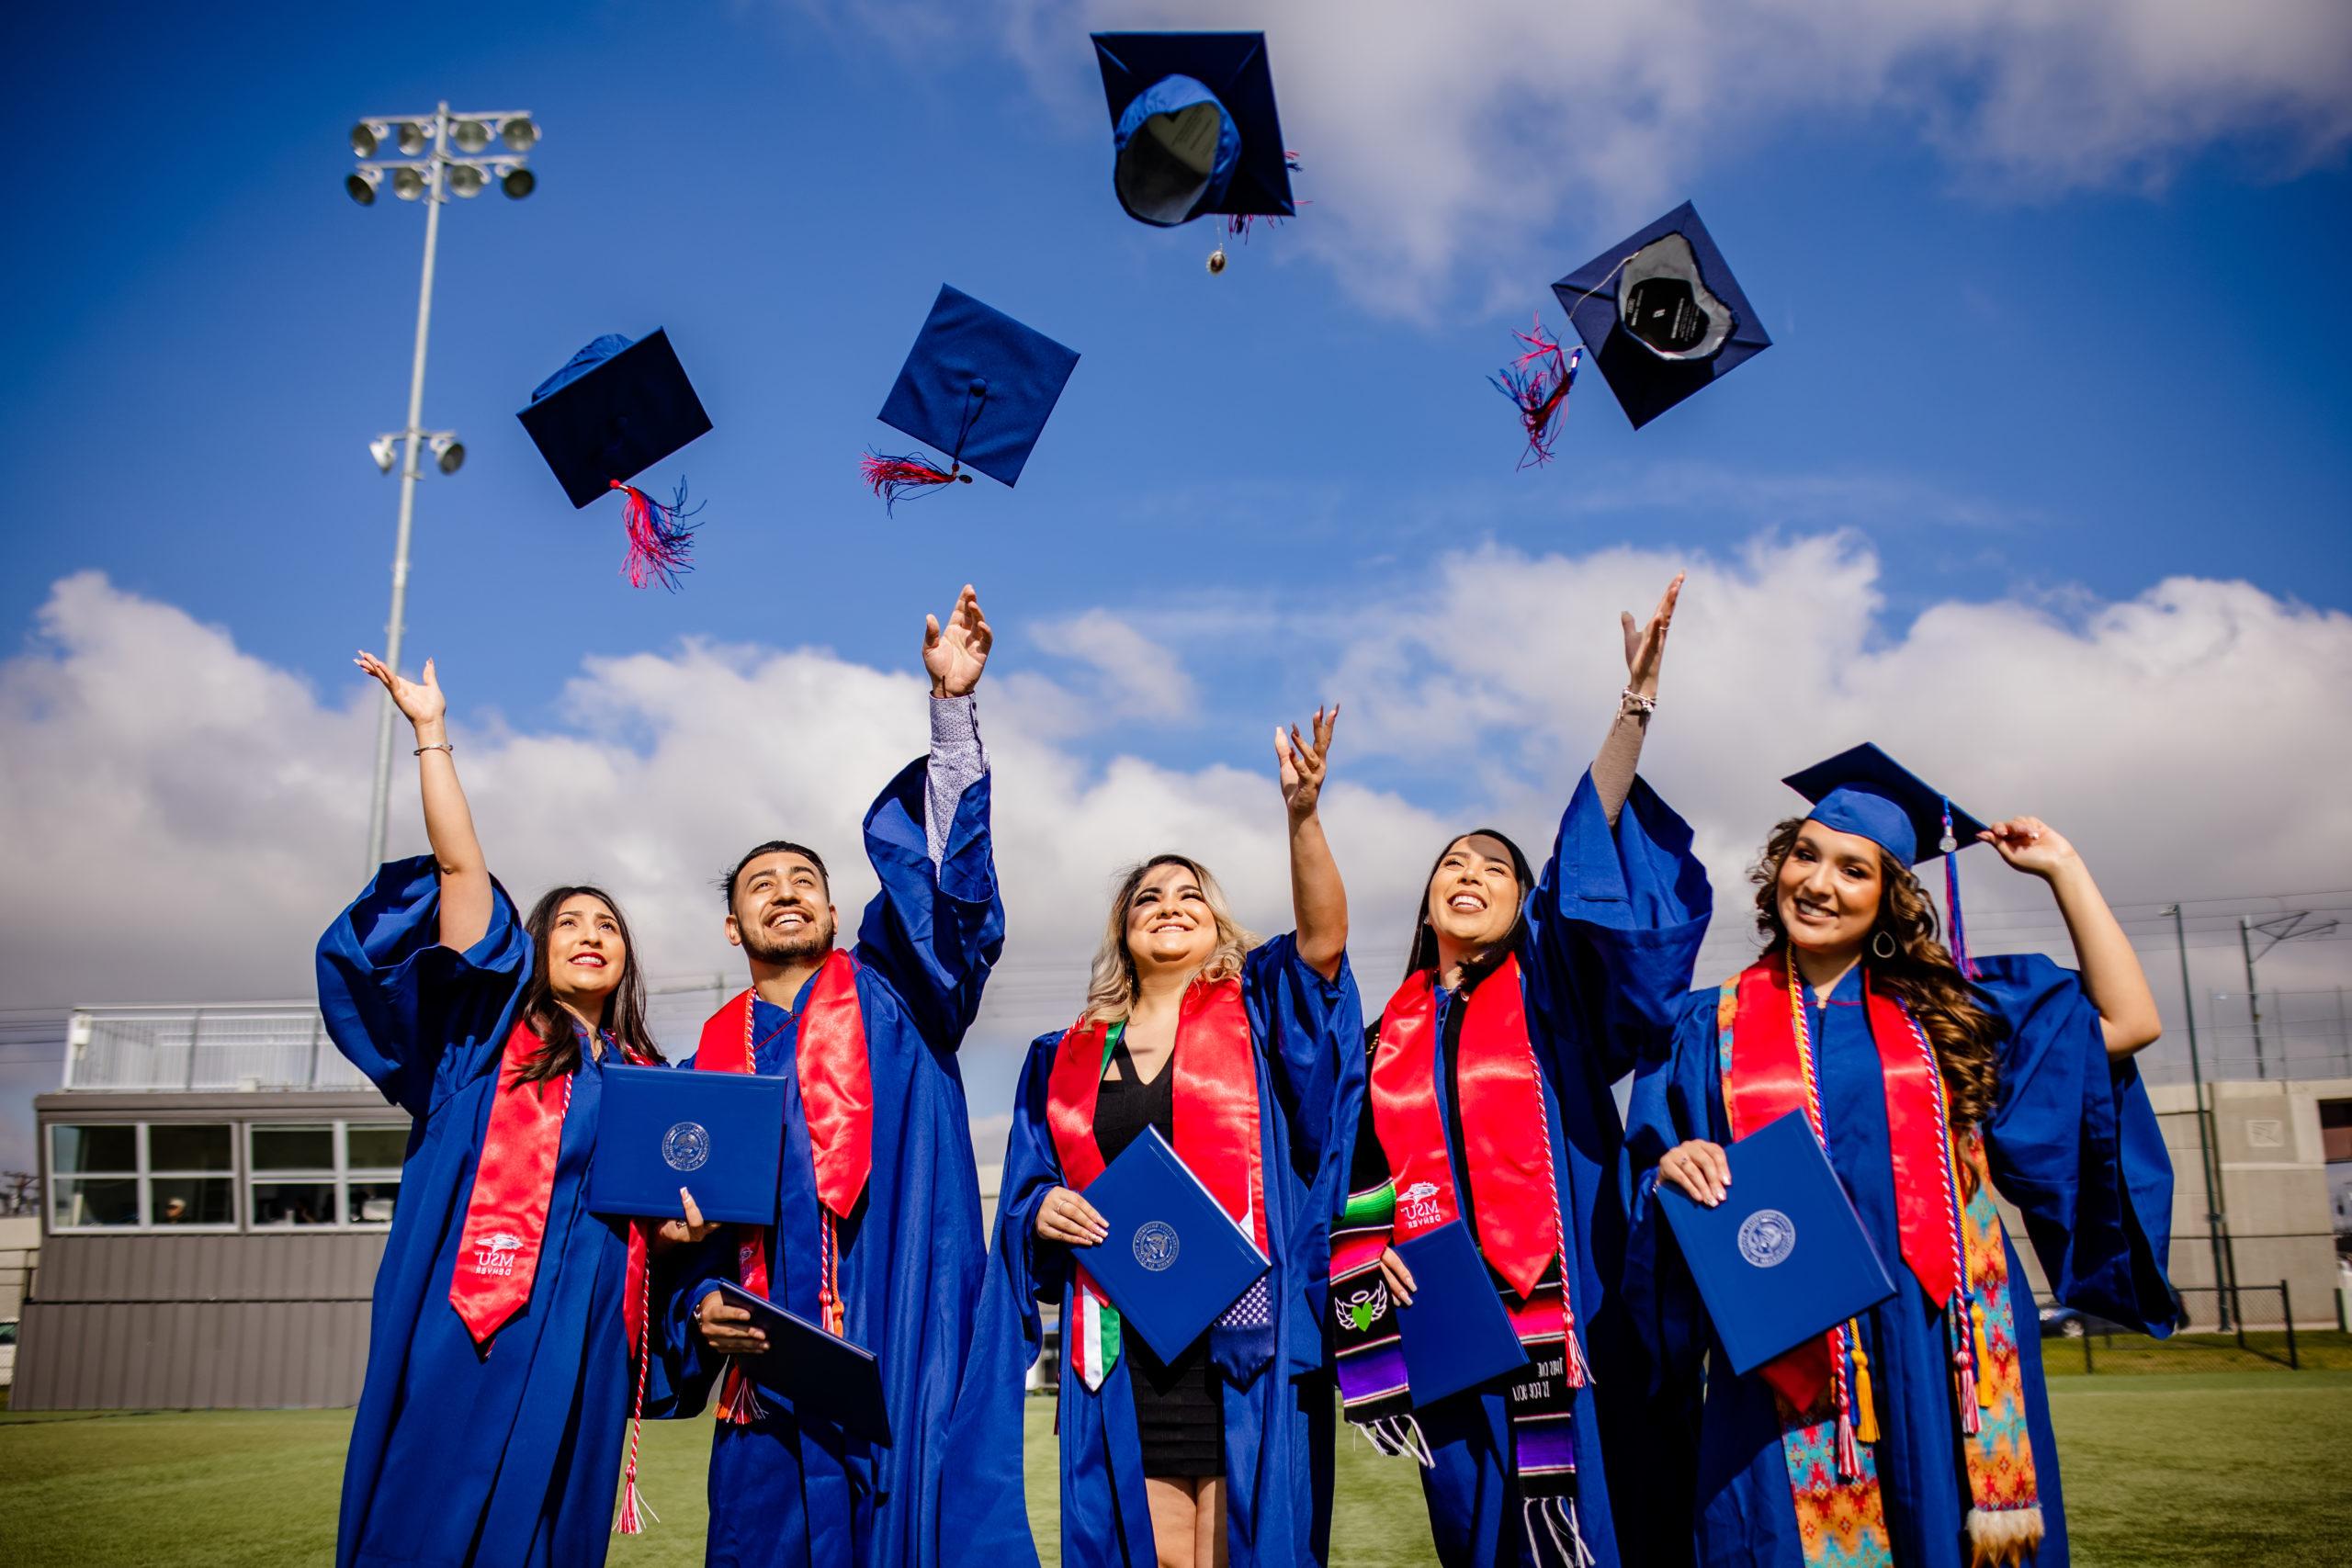 密歇根州立大学丹佛分校的学生将毕业帽抛向空中庆祝毕业